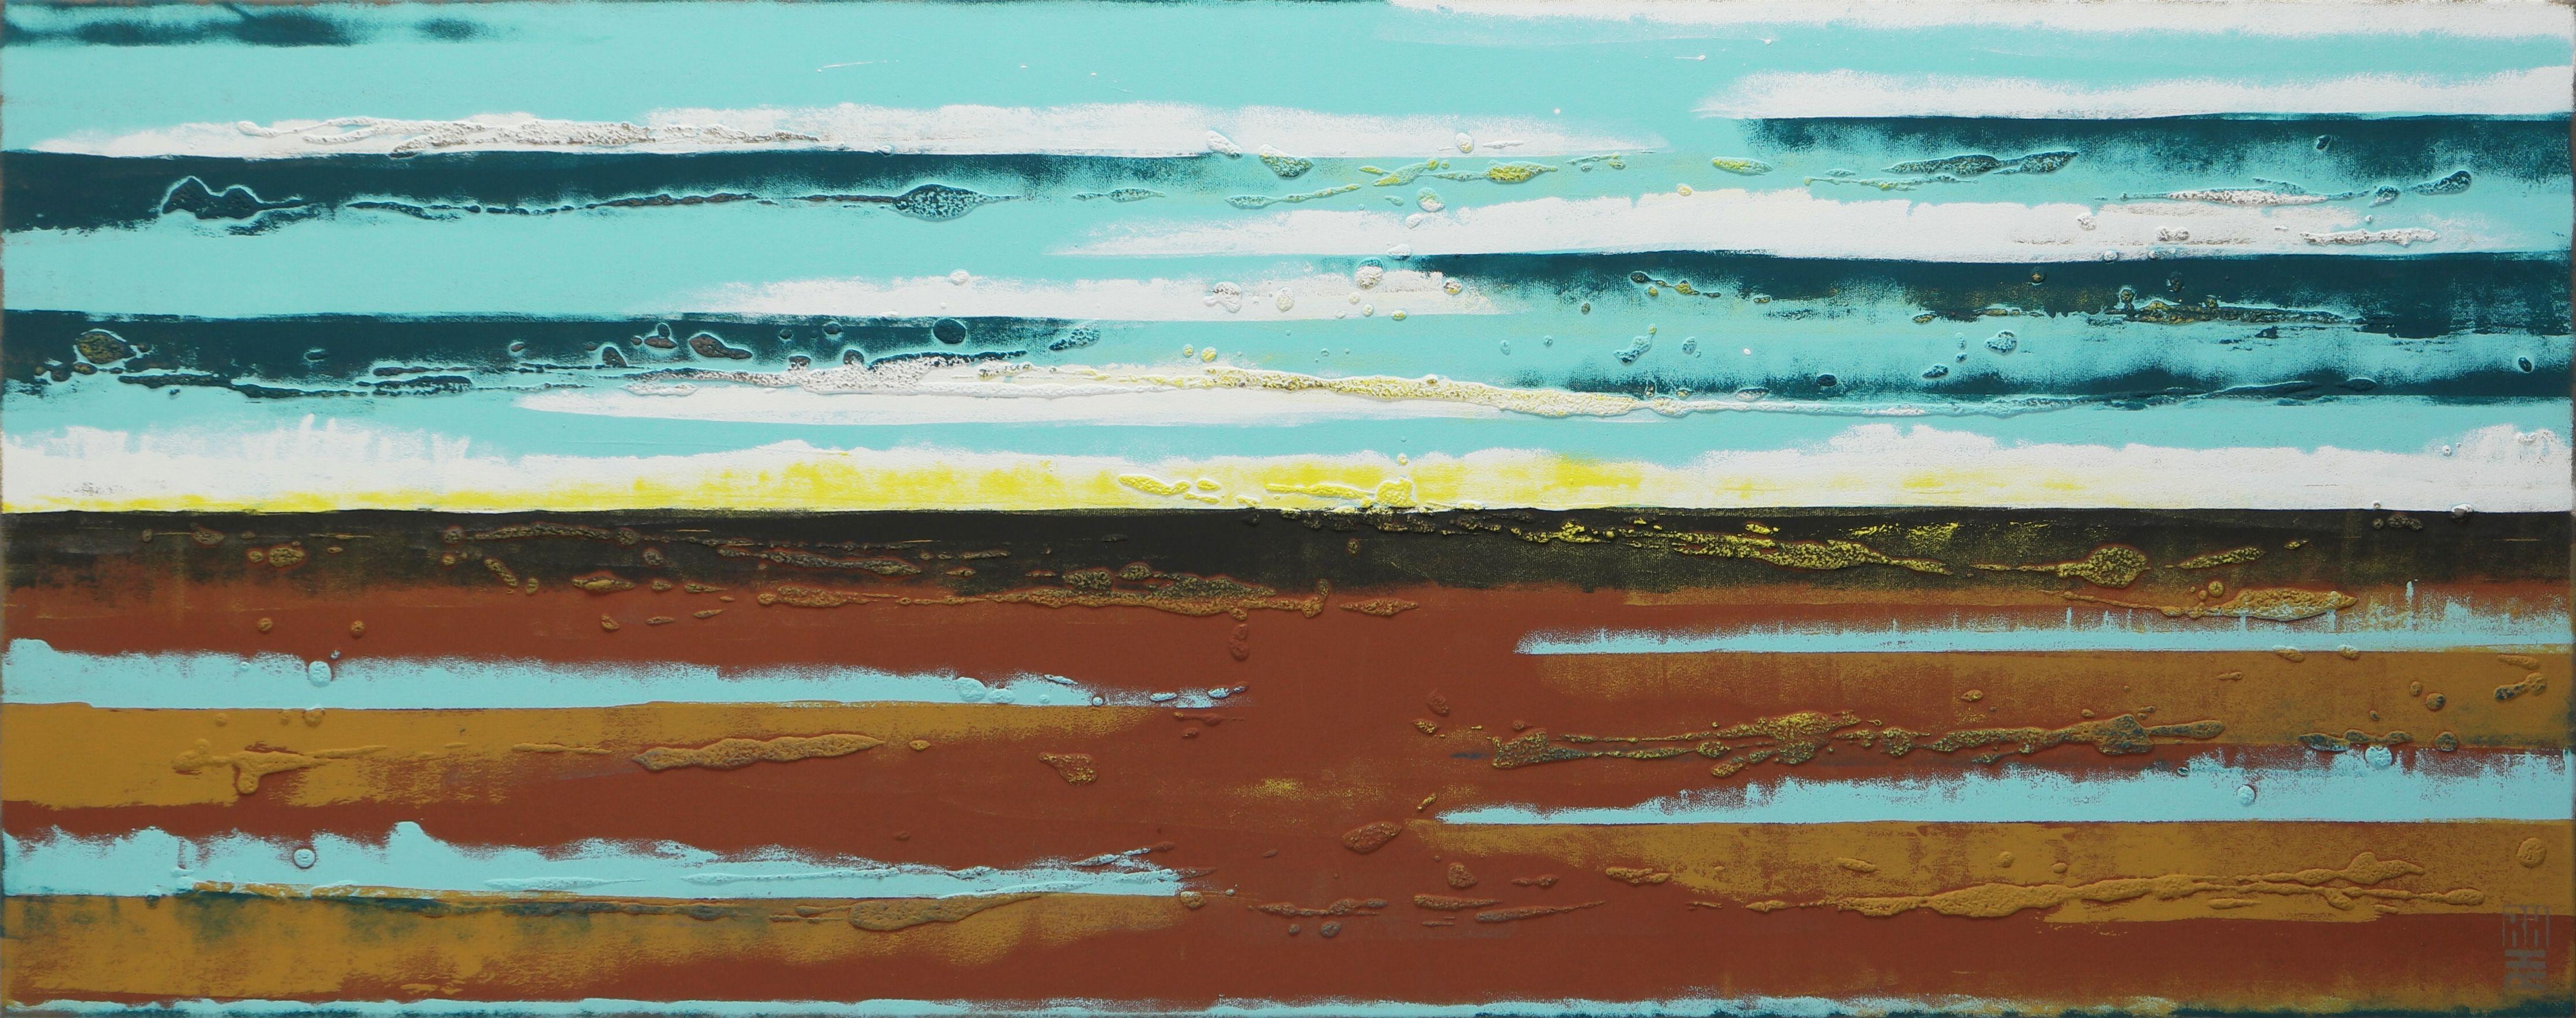 Abstract Painting Ronald Hunter - Paysage de coucher de soleil, peinture, acrylique sur toile